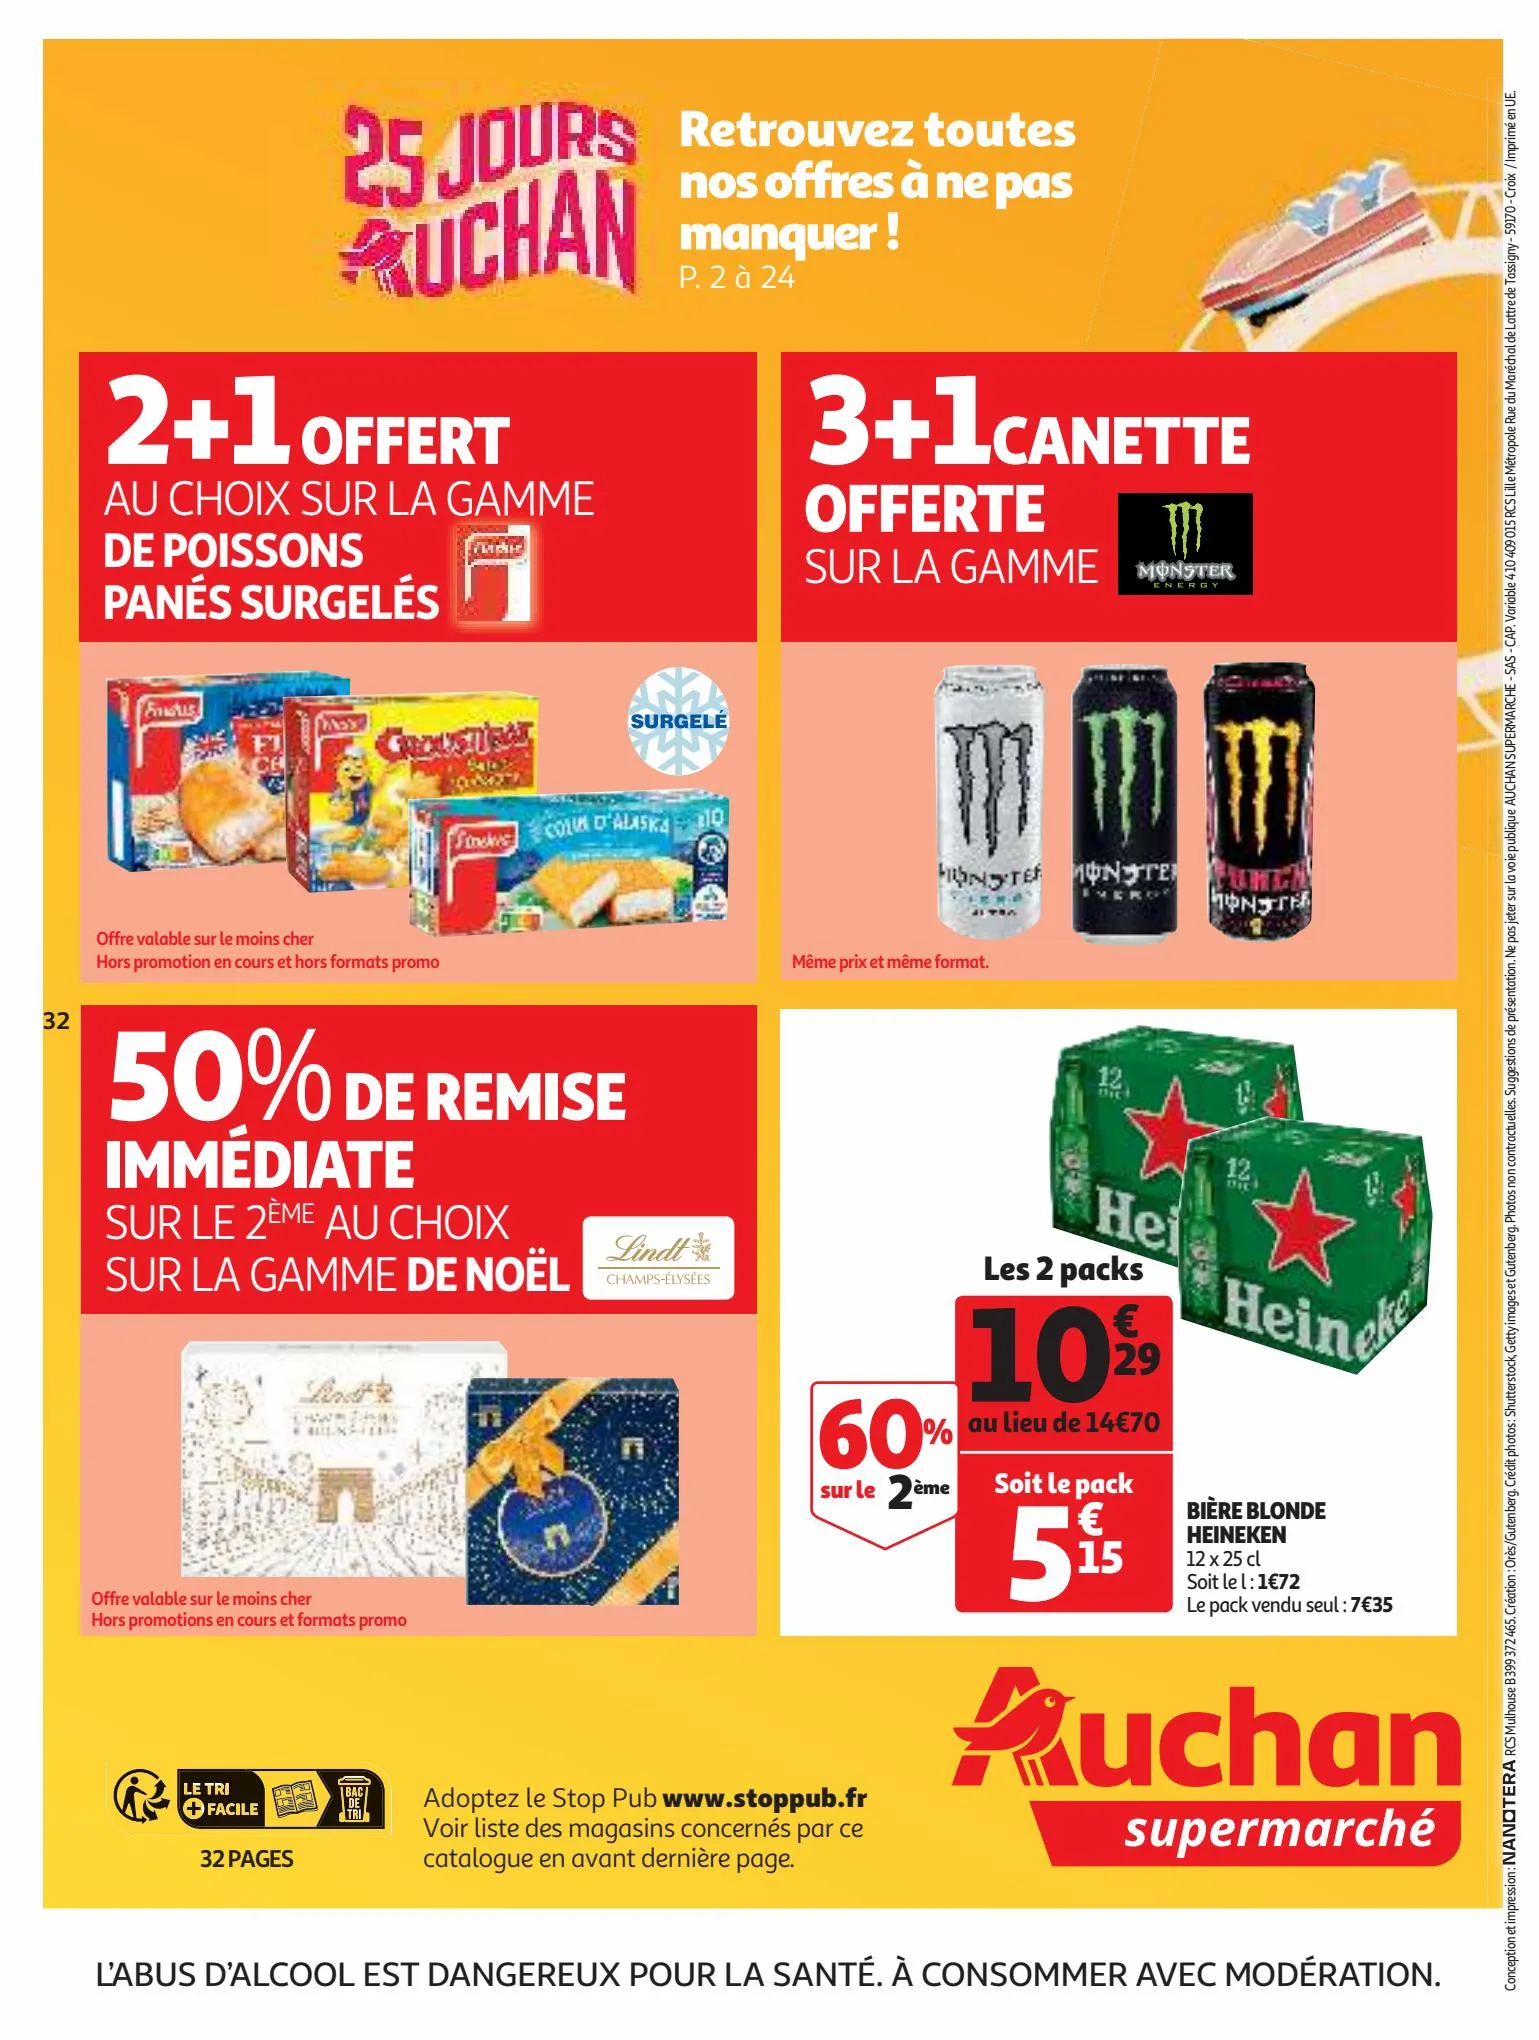 Catalogue 25 jours Auchan, page 00032